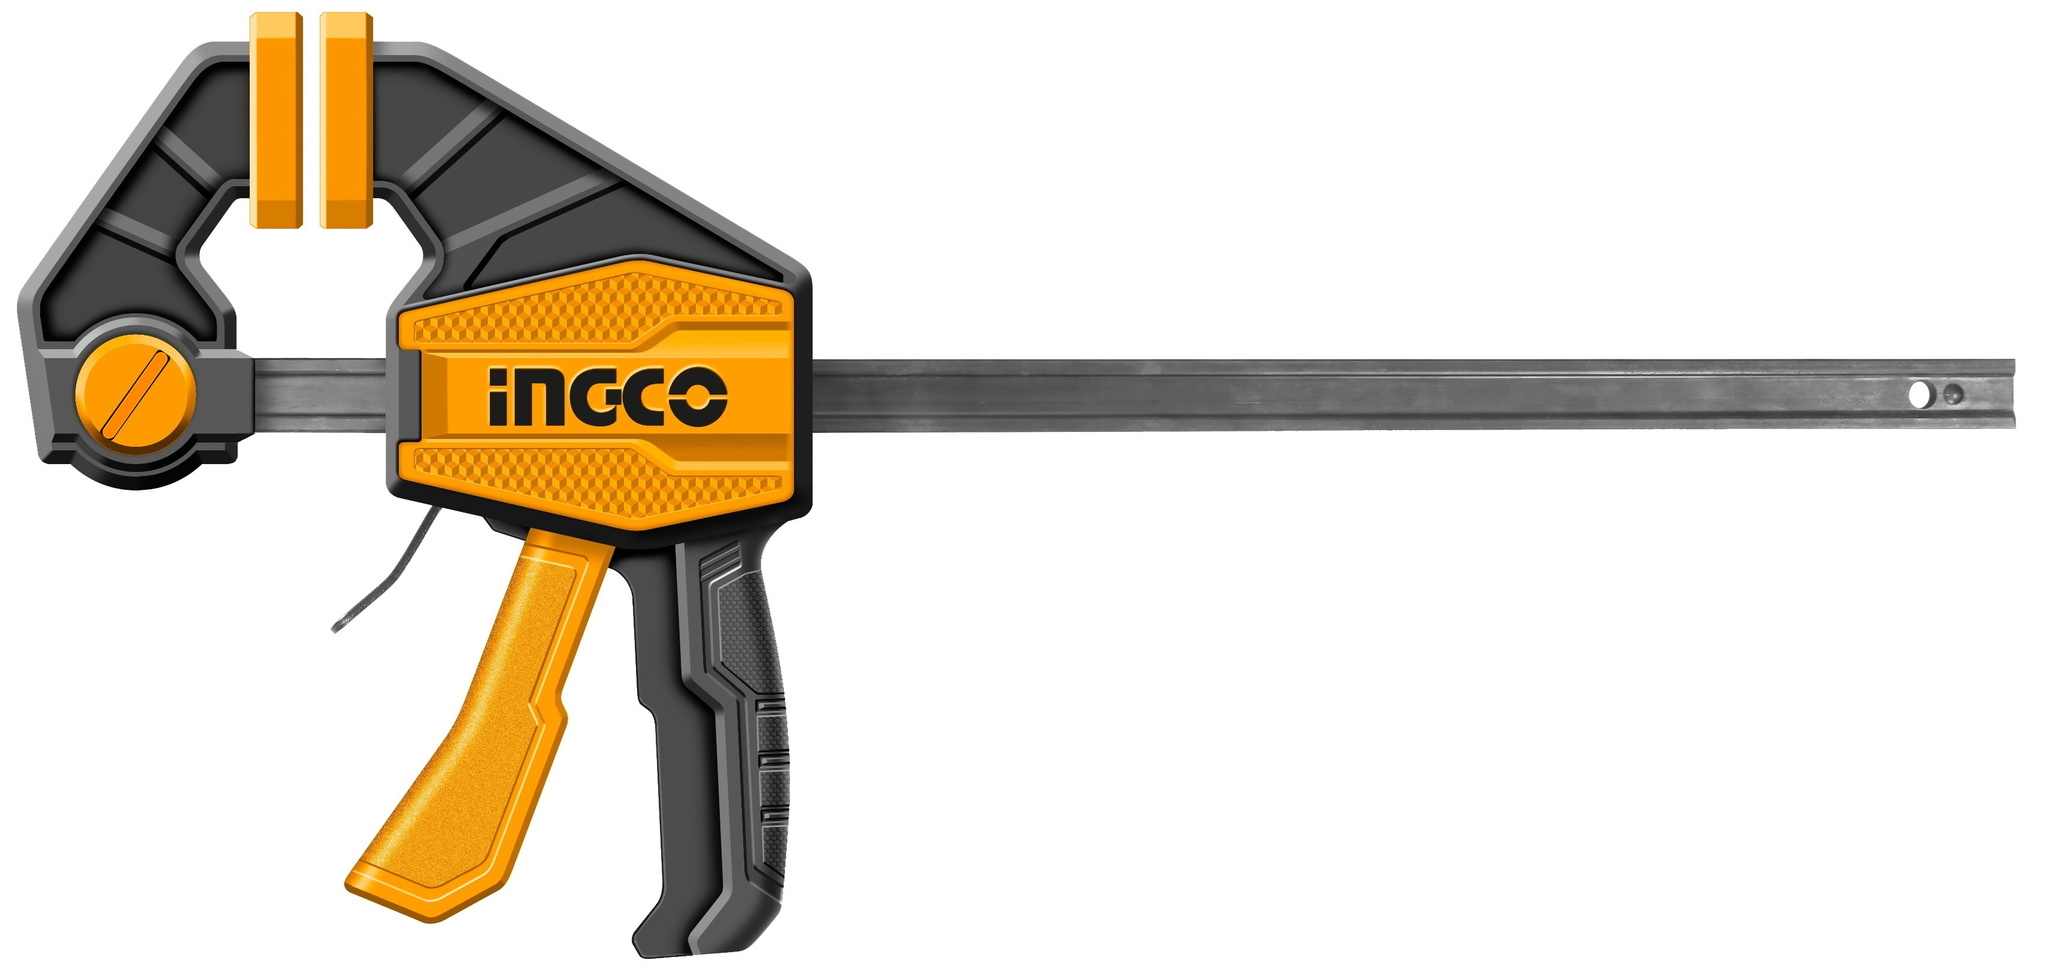 Струбцина быстрозажимная INGCO HQBC36803 80х900 мм быстрозажимная пистолетная струбцина deli dl110112 300x70мм стальная рама усилие до 750n